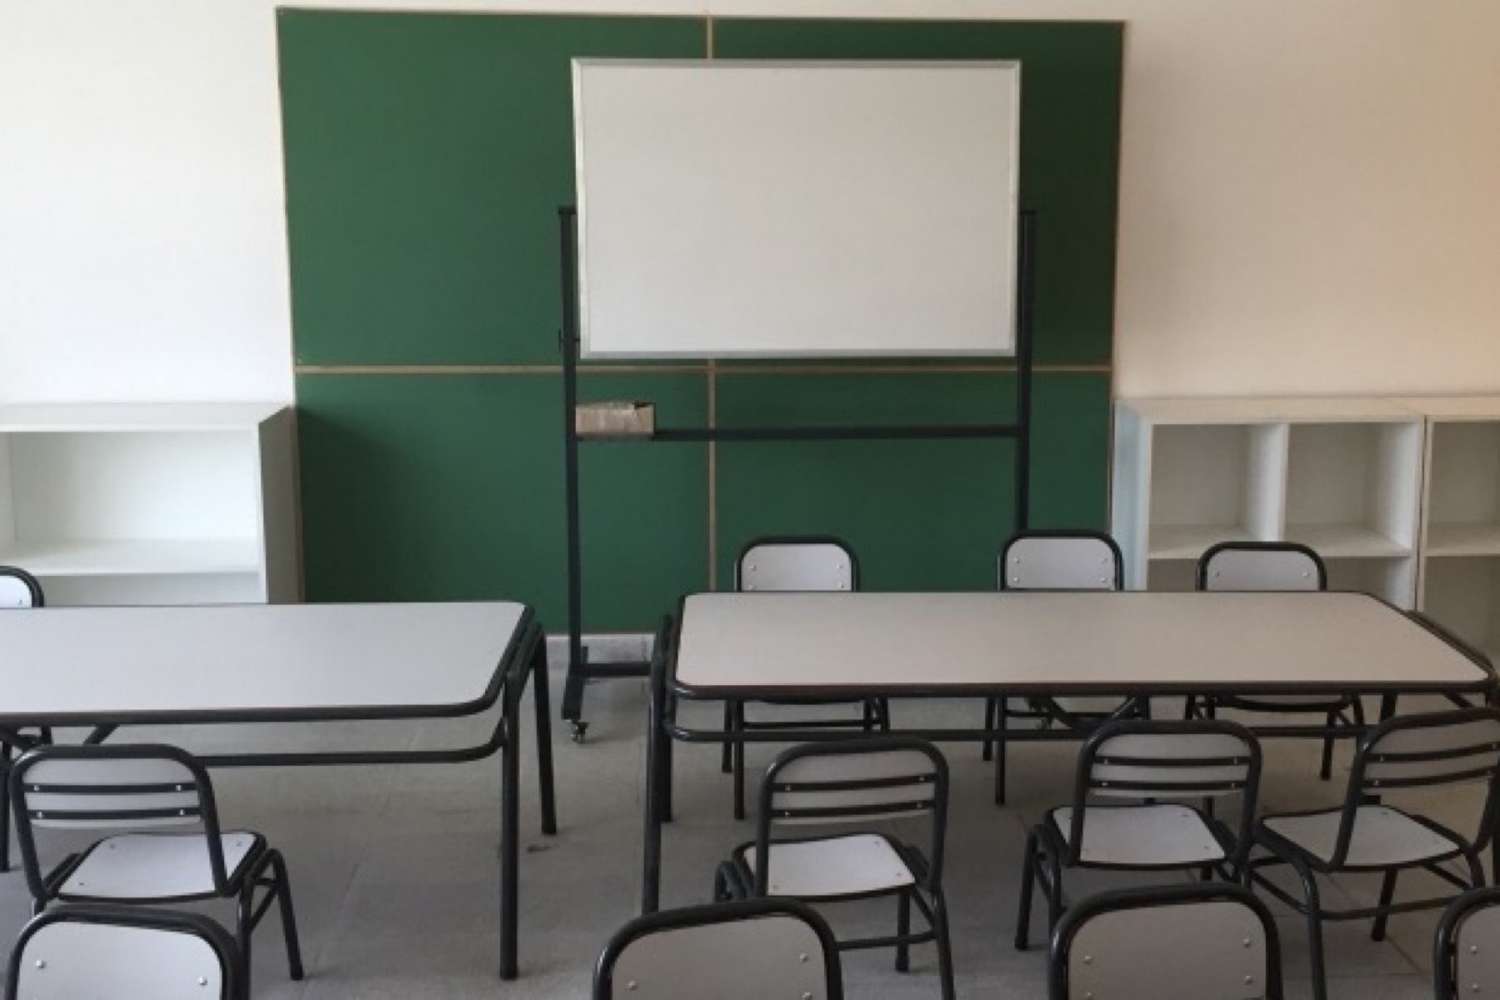 Equiparán con mobiliario a más de 200 escuelas de toda la provincia